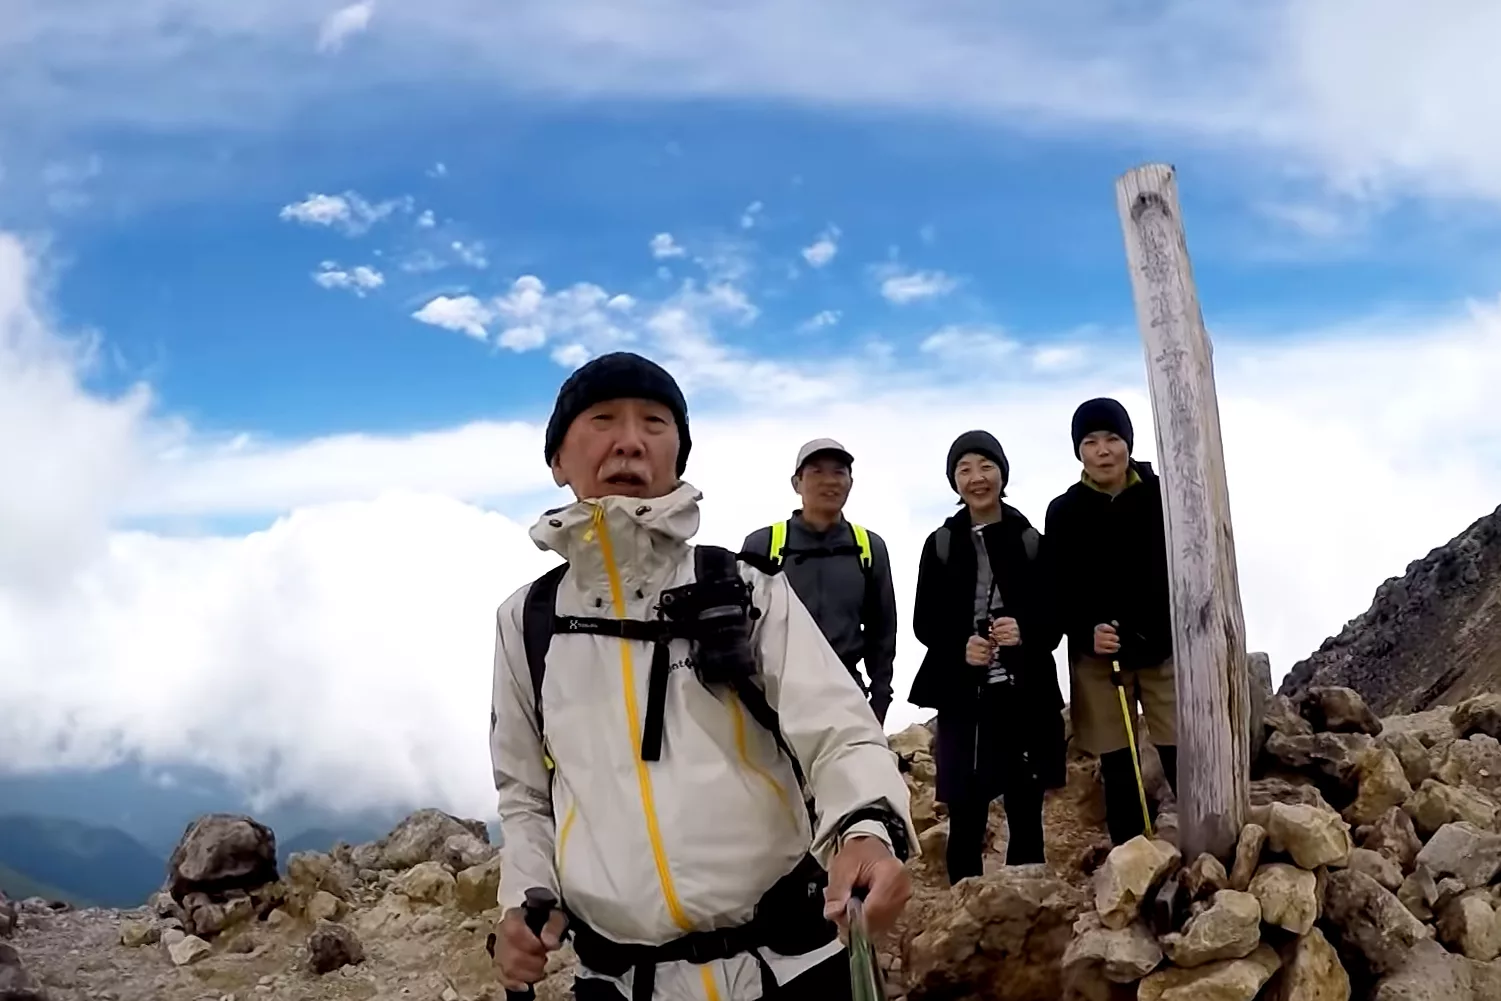 超人気の 山と道 のザックを遂に購入 Diyのワザも駆使して軽量化に成功 Winpy Jijiiさんの最新登山道具がスゴい 山 ハイキング クライミング Be Pal キャンプ アウトドア 自然派生活の情報源ビーパル